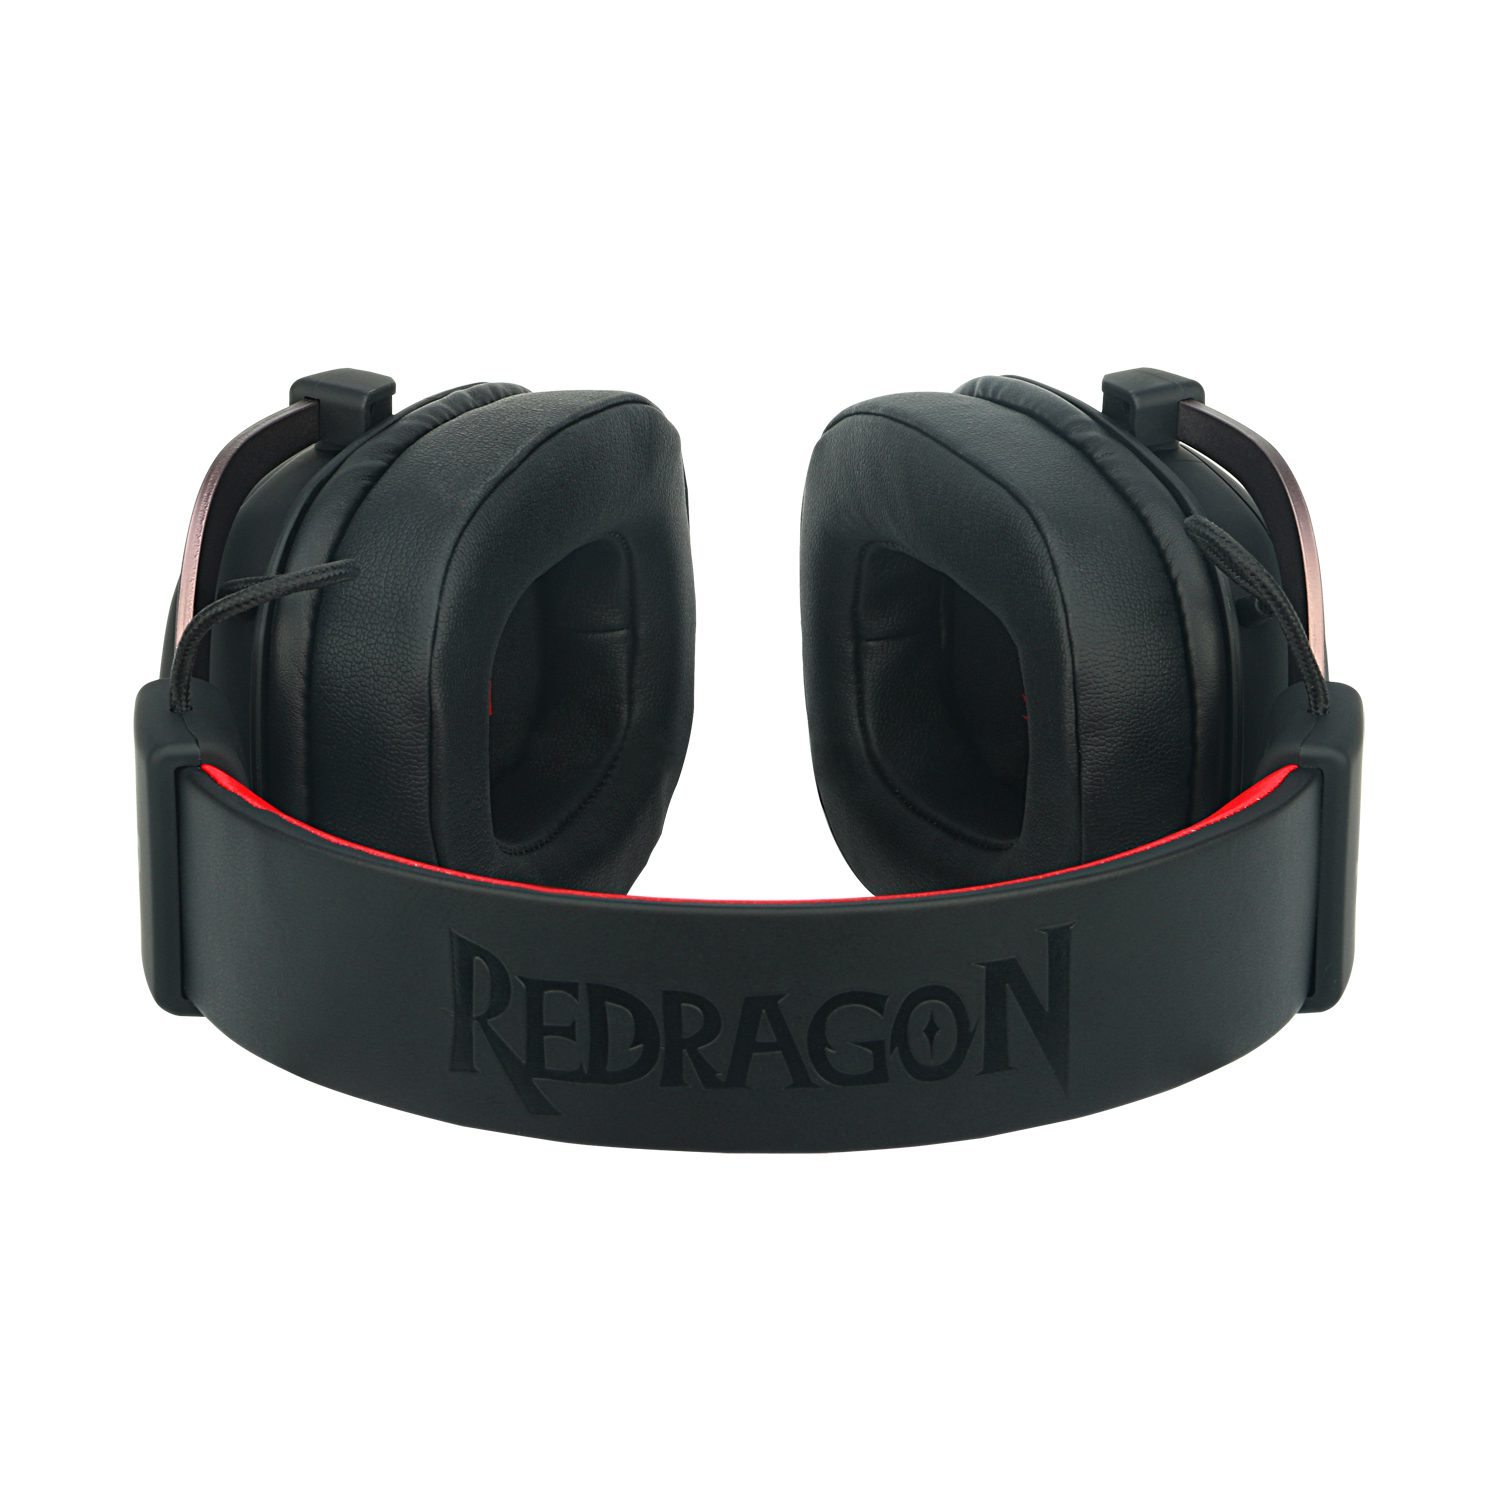 Redragon Zeus 2 H510-1 Gaming Headset